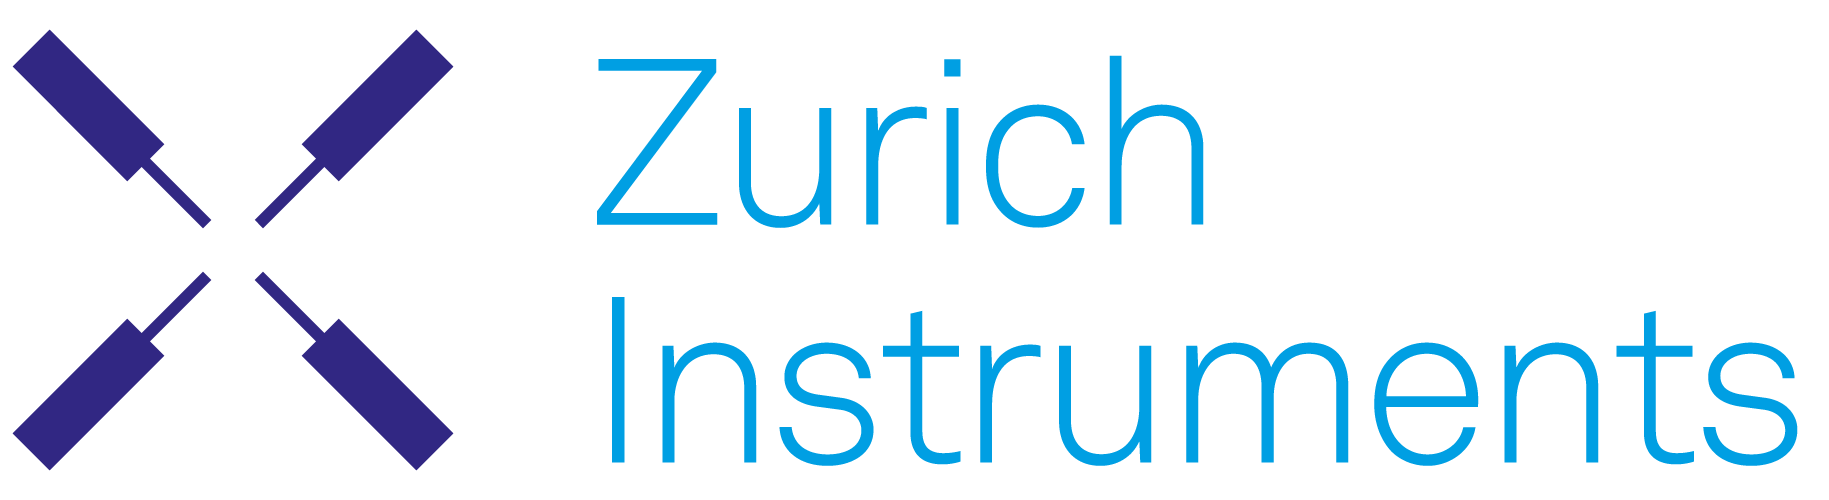 Zürich Instrumenter